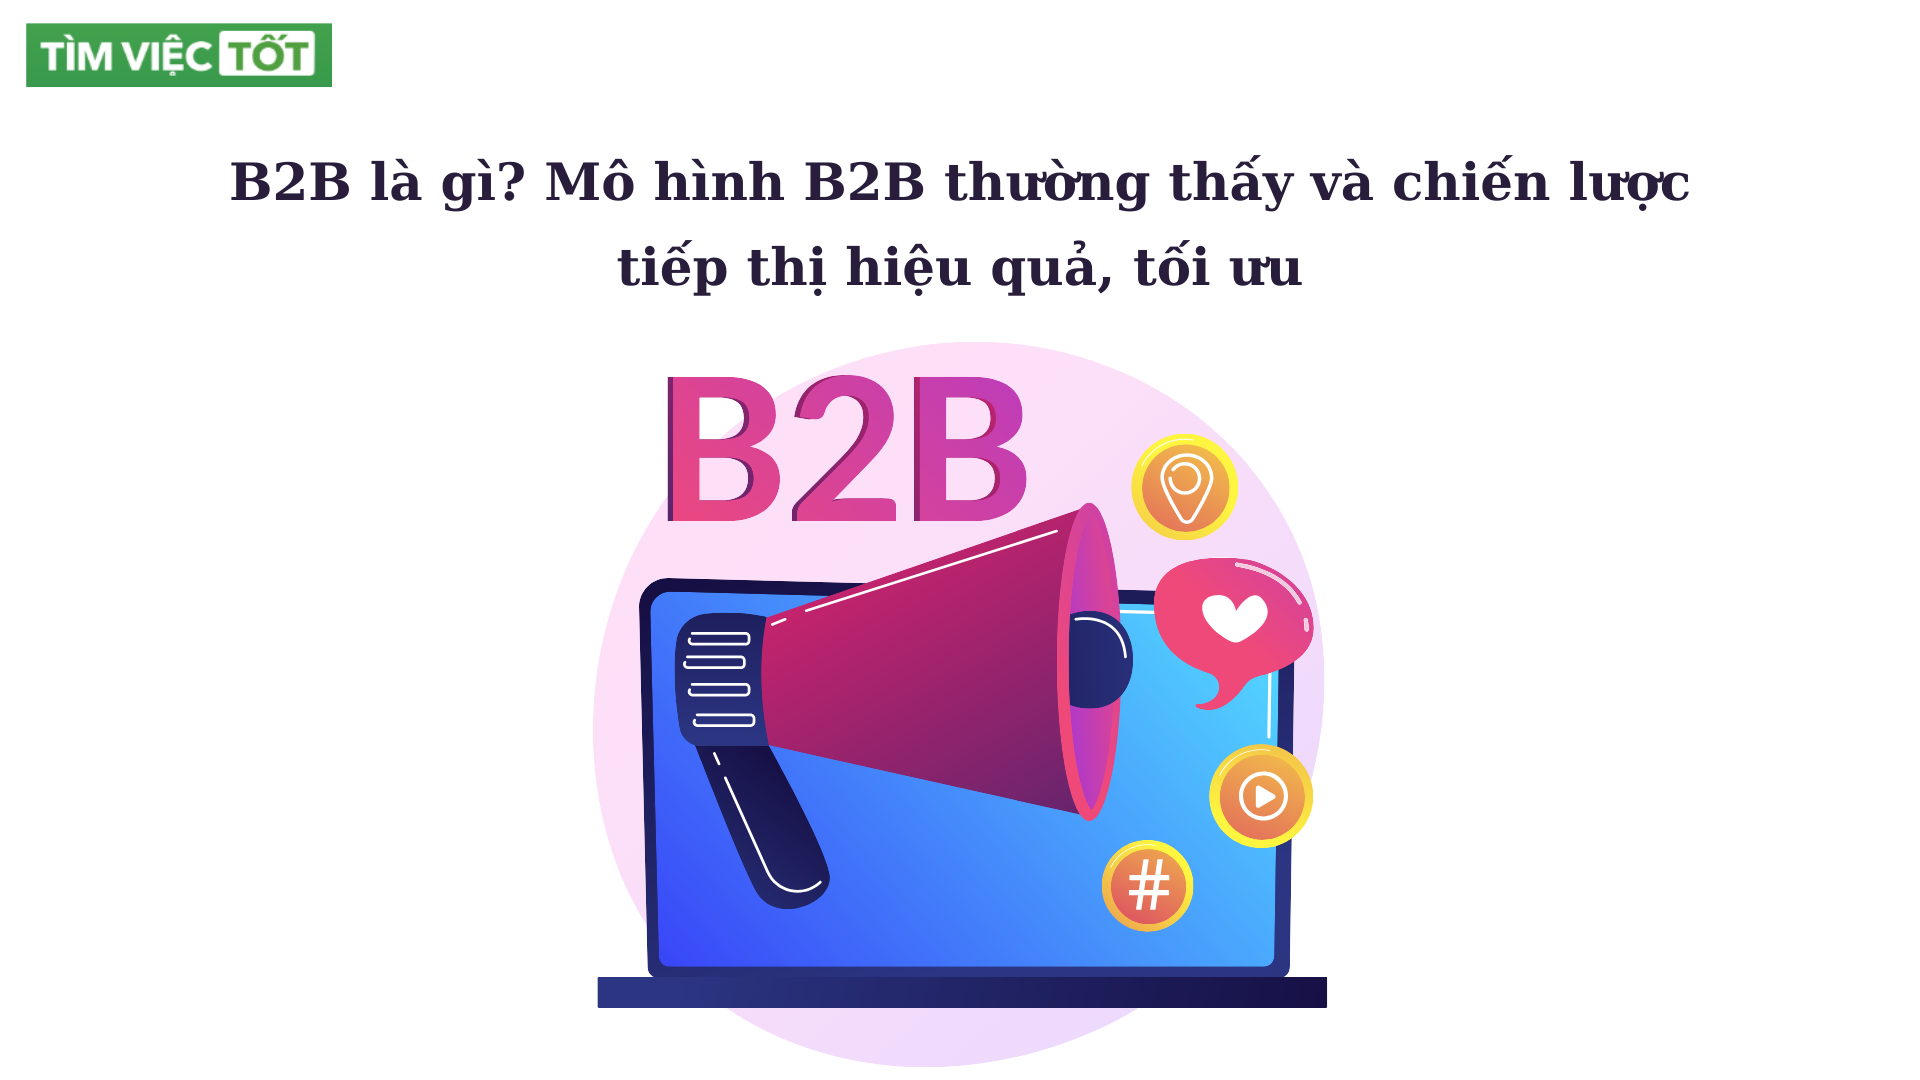 B2B là gì? Mô hình B2B thường thấy và chiến lược tiếp thị hiệu quả, tối ưu